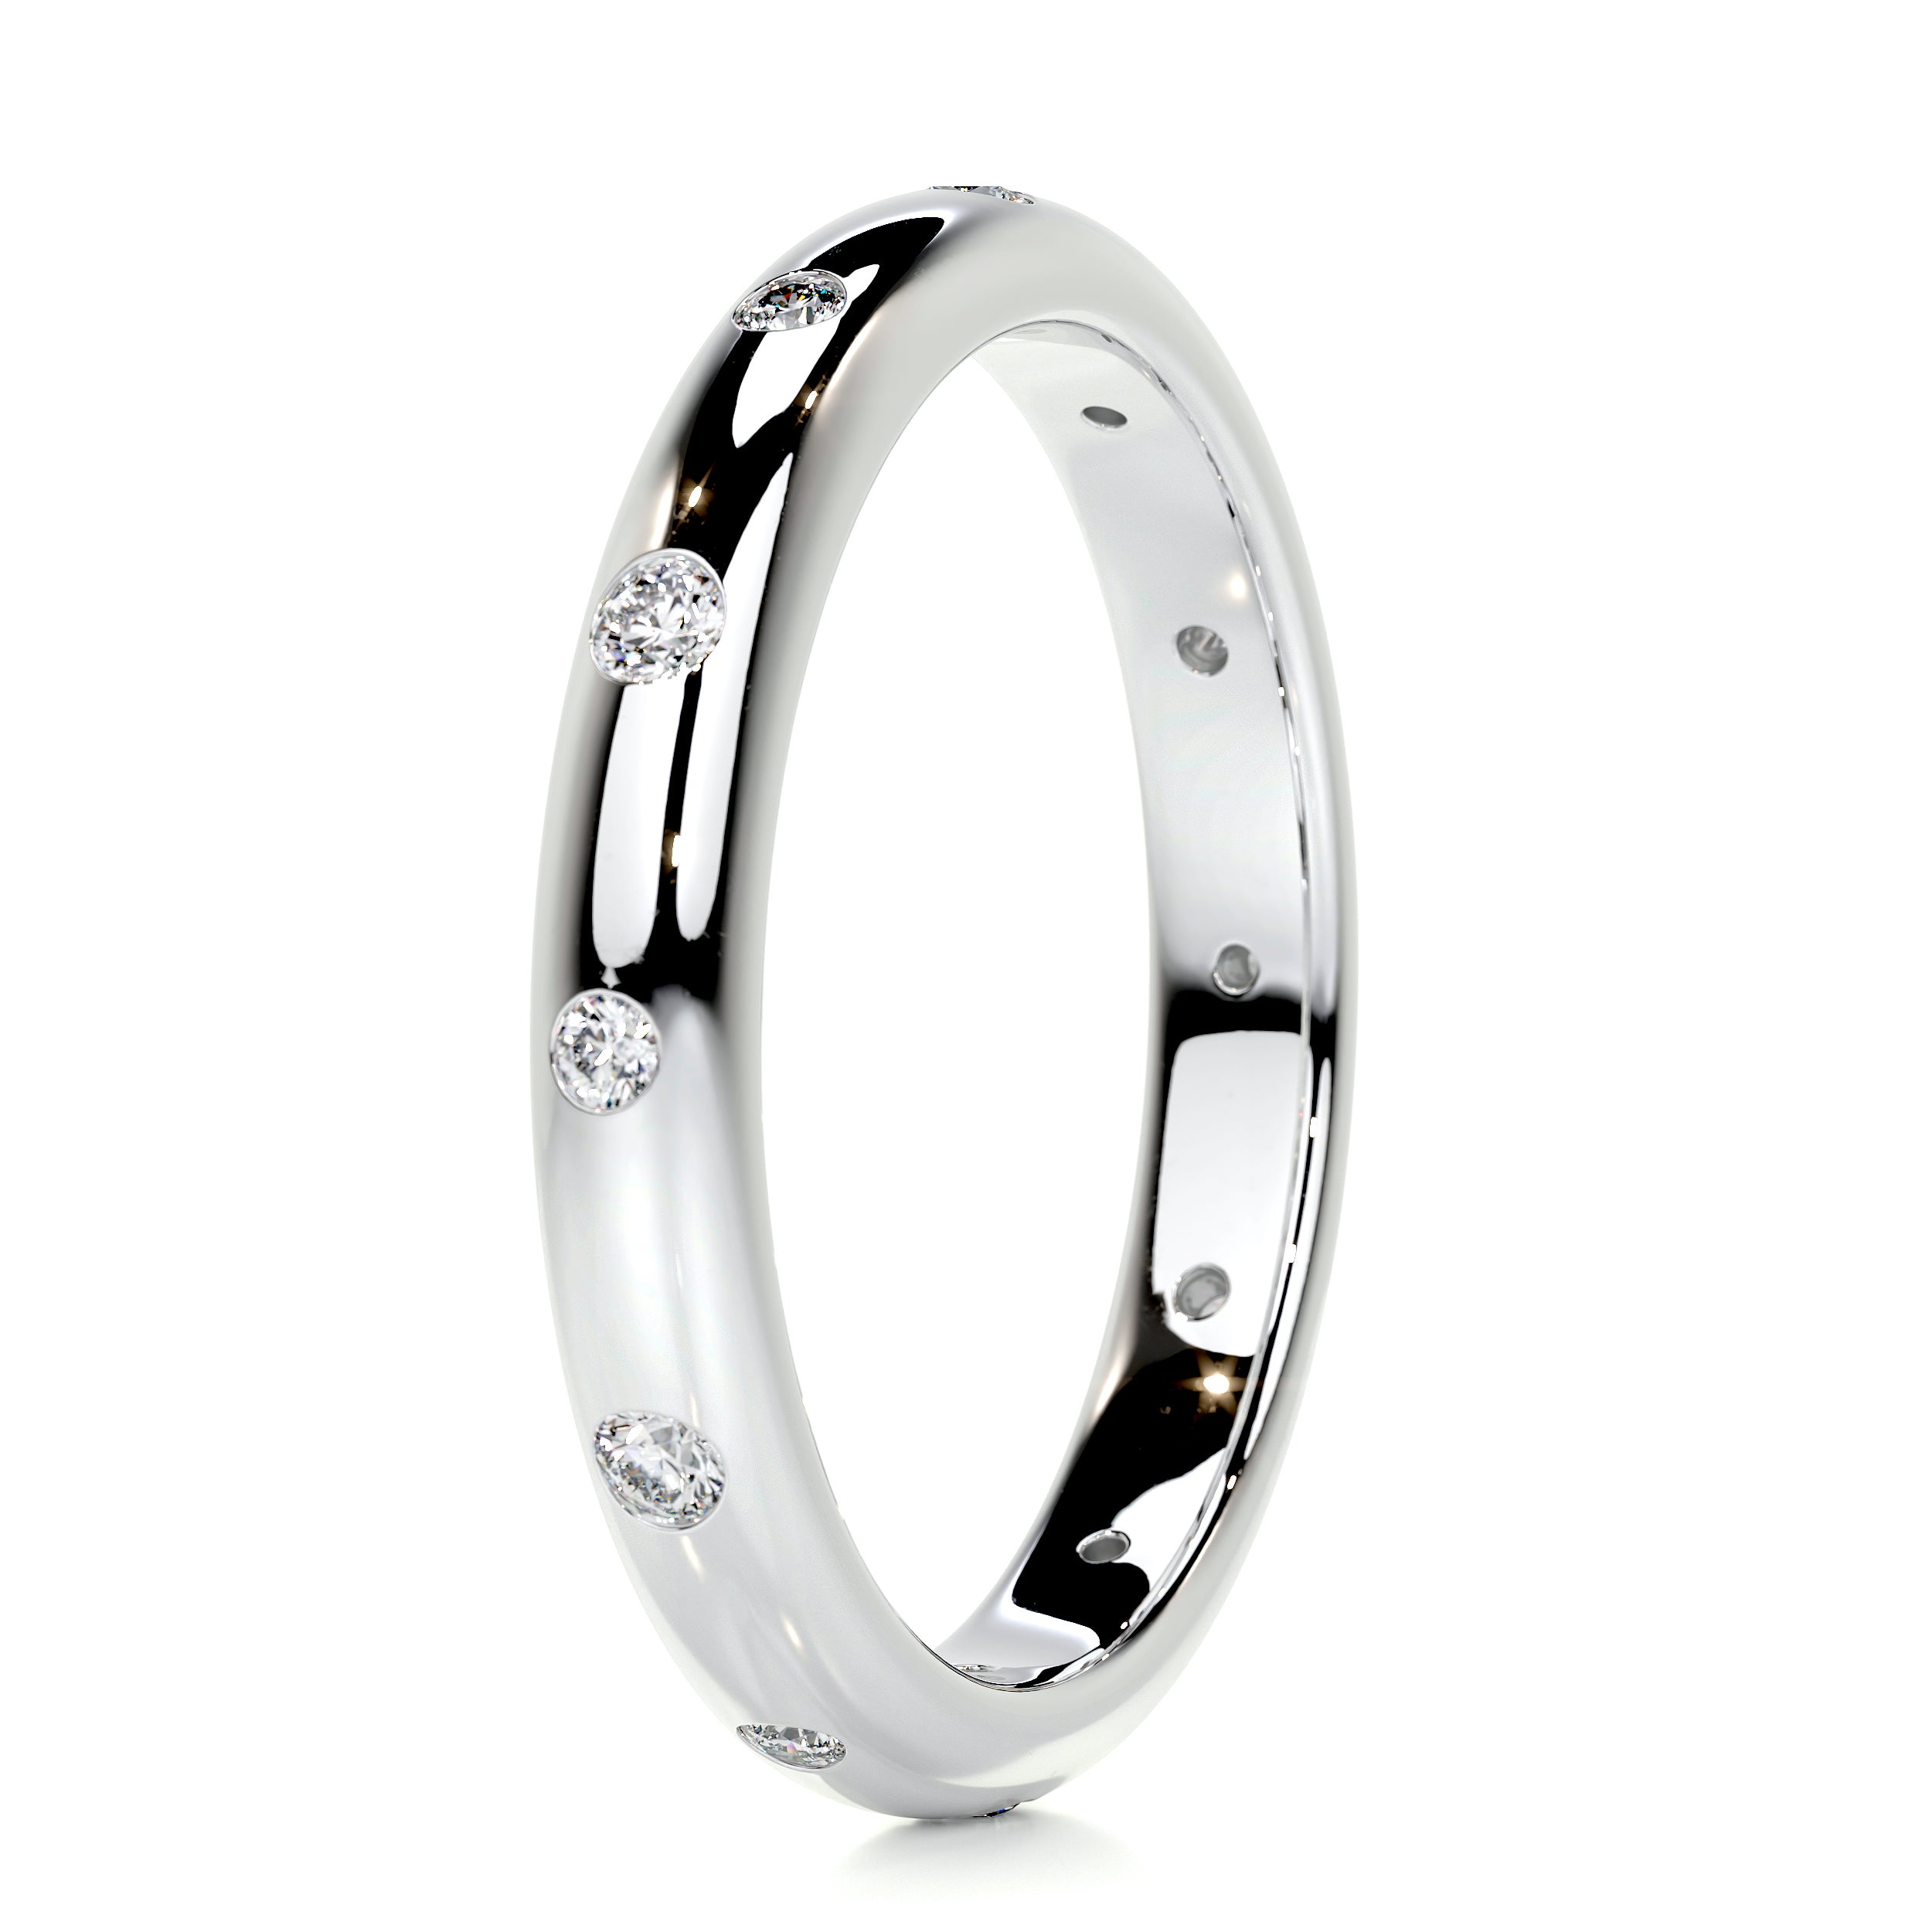 Zara Diamond Wedding Ring   (0.18 Carat) -14K White Gold